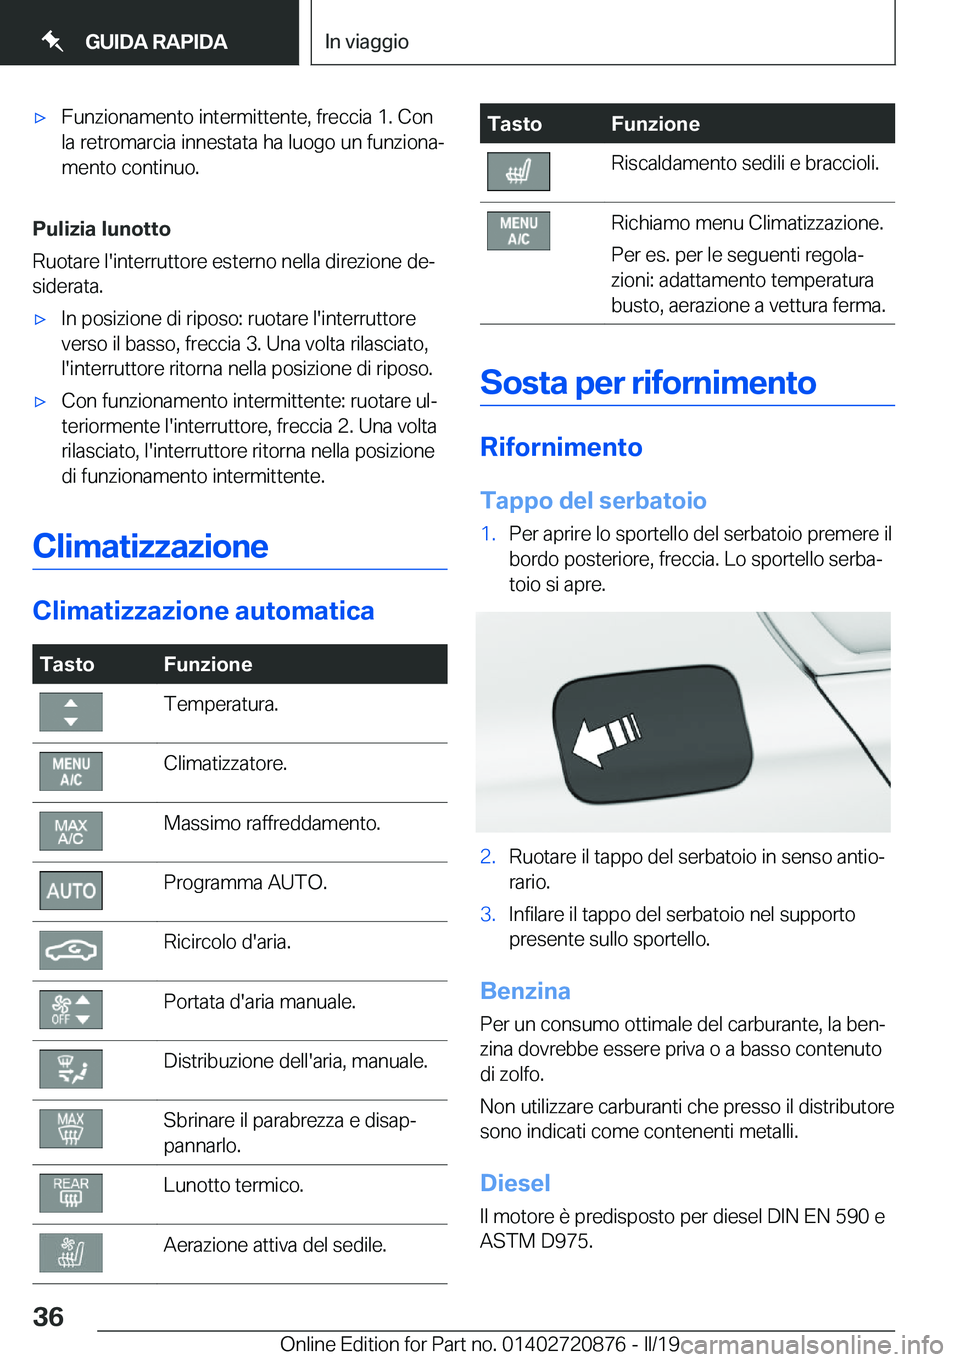 BMW X7 2019  Libretti Di Uso E manutenzione (in Italian) 'x�F�u�n�z�i�o�n�a�m�e�n�t�o��i�n�t�e�r�m�i�t�t�e�n�t�e�,��f�r�e�c�c�i�a��1�.��C�o�n
�l�a��r�e�t�r�o�m�a�r�c�i�a��i�n�n�e�s�t�a�t�a��h�a��l�u�o�g�o��u�n��f�u�n�z�i�o�n�aª
�m�e�n�t�o��